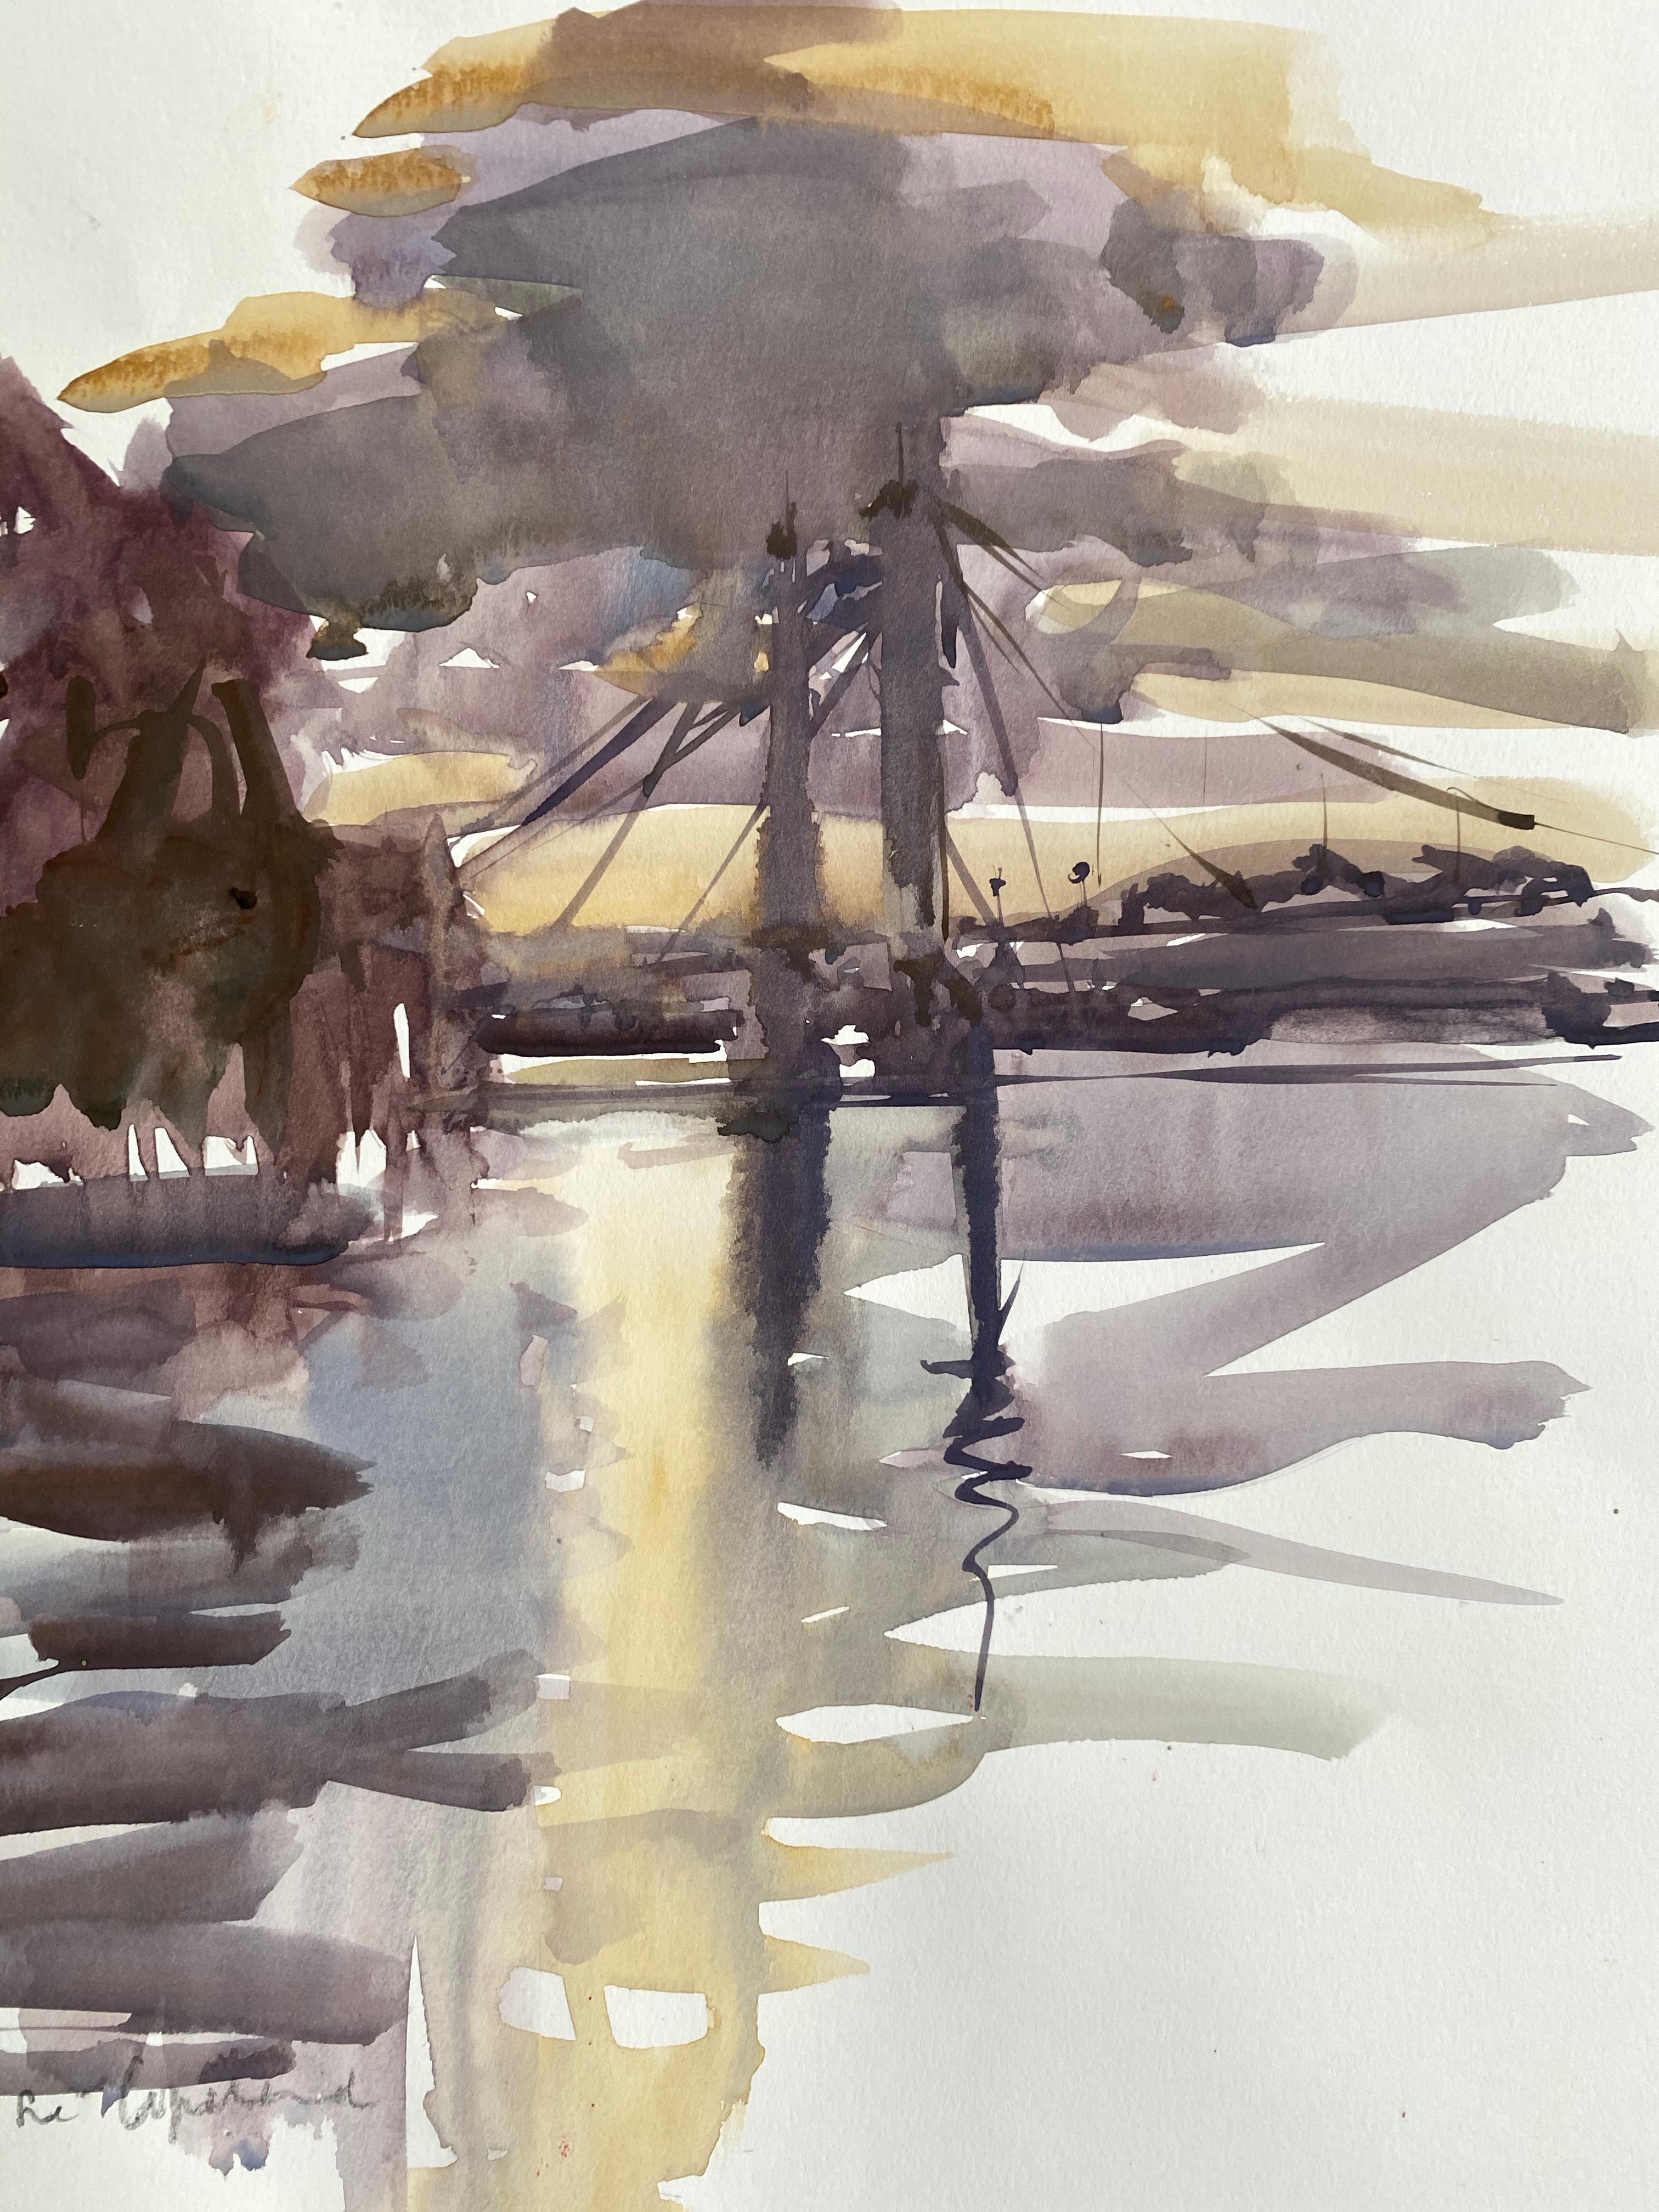 Rosie Copeland
Coucher de soleil, Albert Bridge
Peinture originale de paysage
Gouache sur papier 200gsm
Taille de l'image : 38 x 35 cm
Vendu sans cadre

Veuillez noter que les images in situ sont purement indicatives de l'aspect d'une